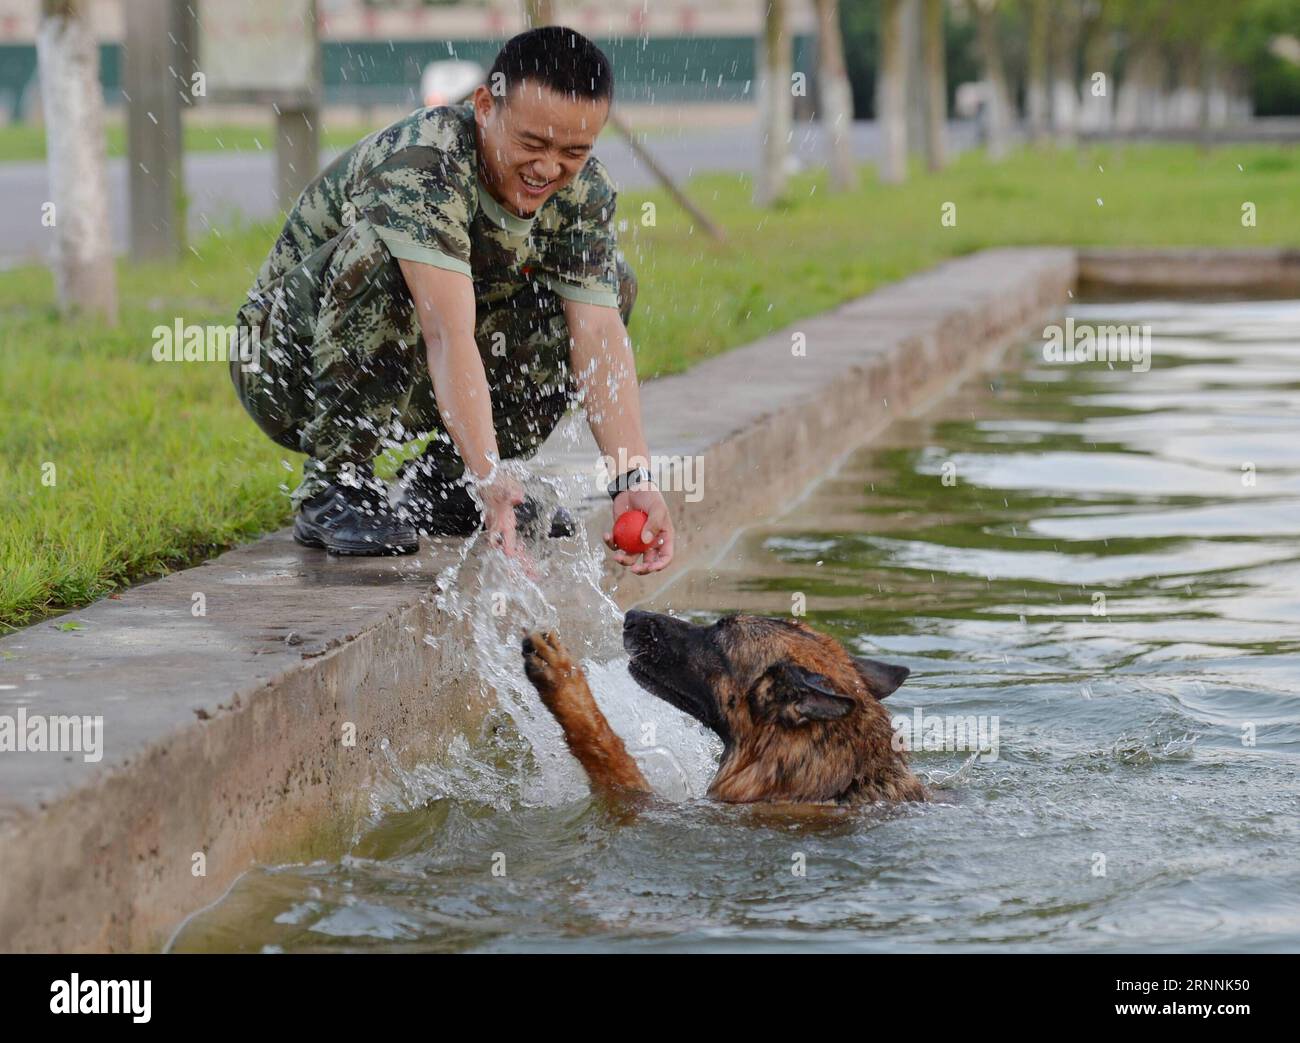 (170719) -- CHONGQING, 19. Juli 2017 -- Ein Polizeihund spielt im Pool, um sich in der südwestchinesischen Gemeinde Chongqing am 19. Juli 2017 abzukühlen. Trainer verwenden verschiedene Methoden, um die Hitze für Polizeihunde in Chongqing zu besiegen. ) (zx) CHINA-CHONGQING-HEAT-POLICE DOG (CN) CaoxFeng PUBLICATIONxNOTxINxCHN CHONGQING 19. Juli 2017 ein Polizeihund SPIELT im Pool, um sich im Südwesten Chinas abzukühlen S Chongqing Gemeinde 19. Juli 2017 Trainer verwenden verschiedene Methoden, um die Hitze für Polizeihunde in Chongqing ZX China Chongqing Heat Police Dog CaCN zu besiegen PUBLICATIONxNOTxINxCHN Stockfoto